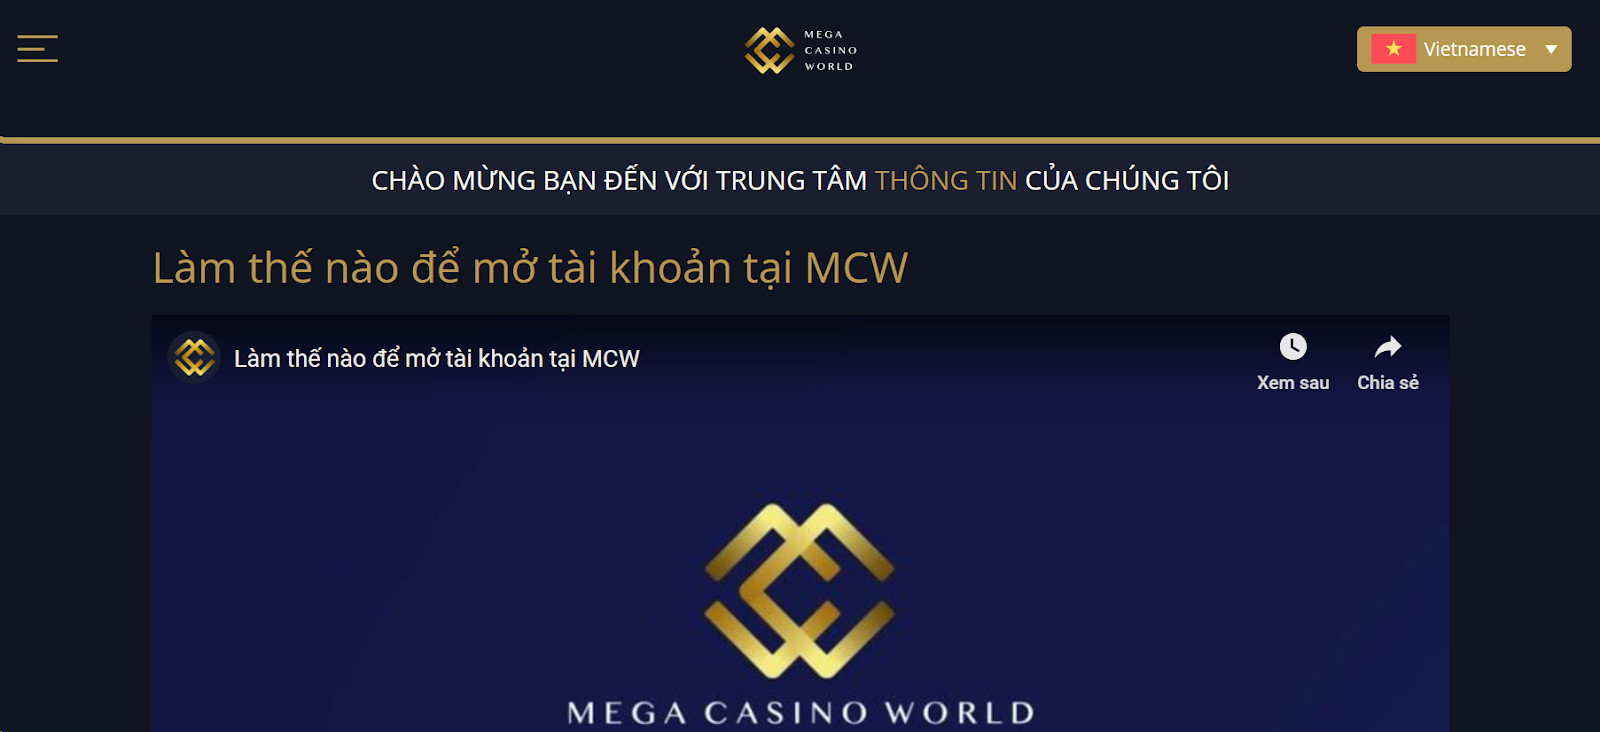 Tìm hiểu về điều kiện đăng ký MCW